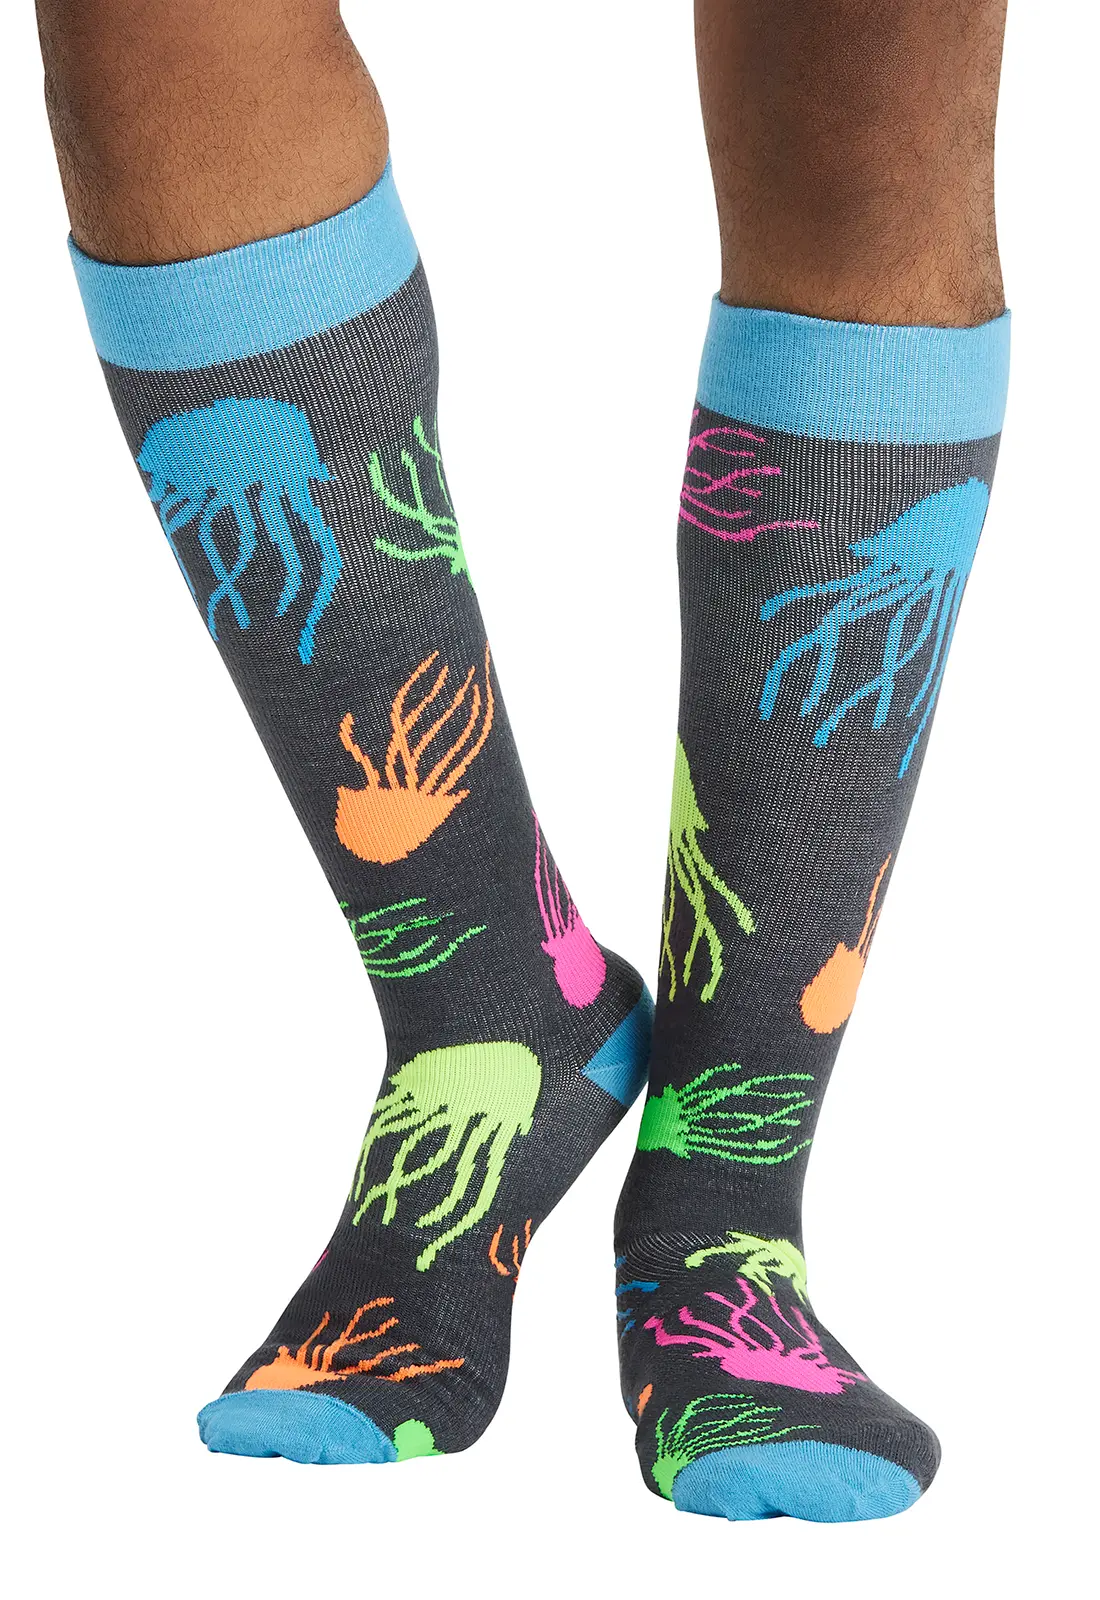 Men's 10-15mmHg Support Socks